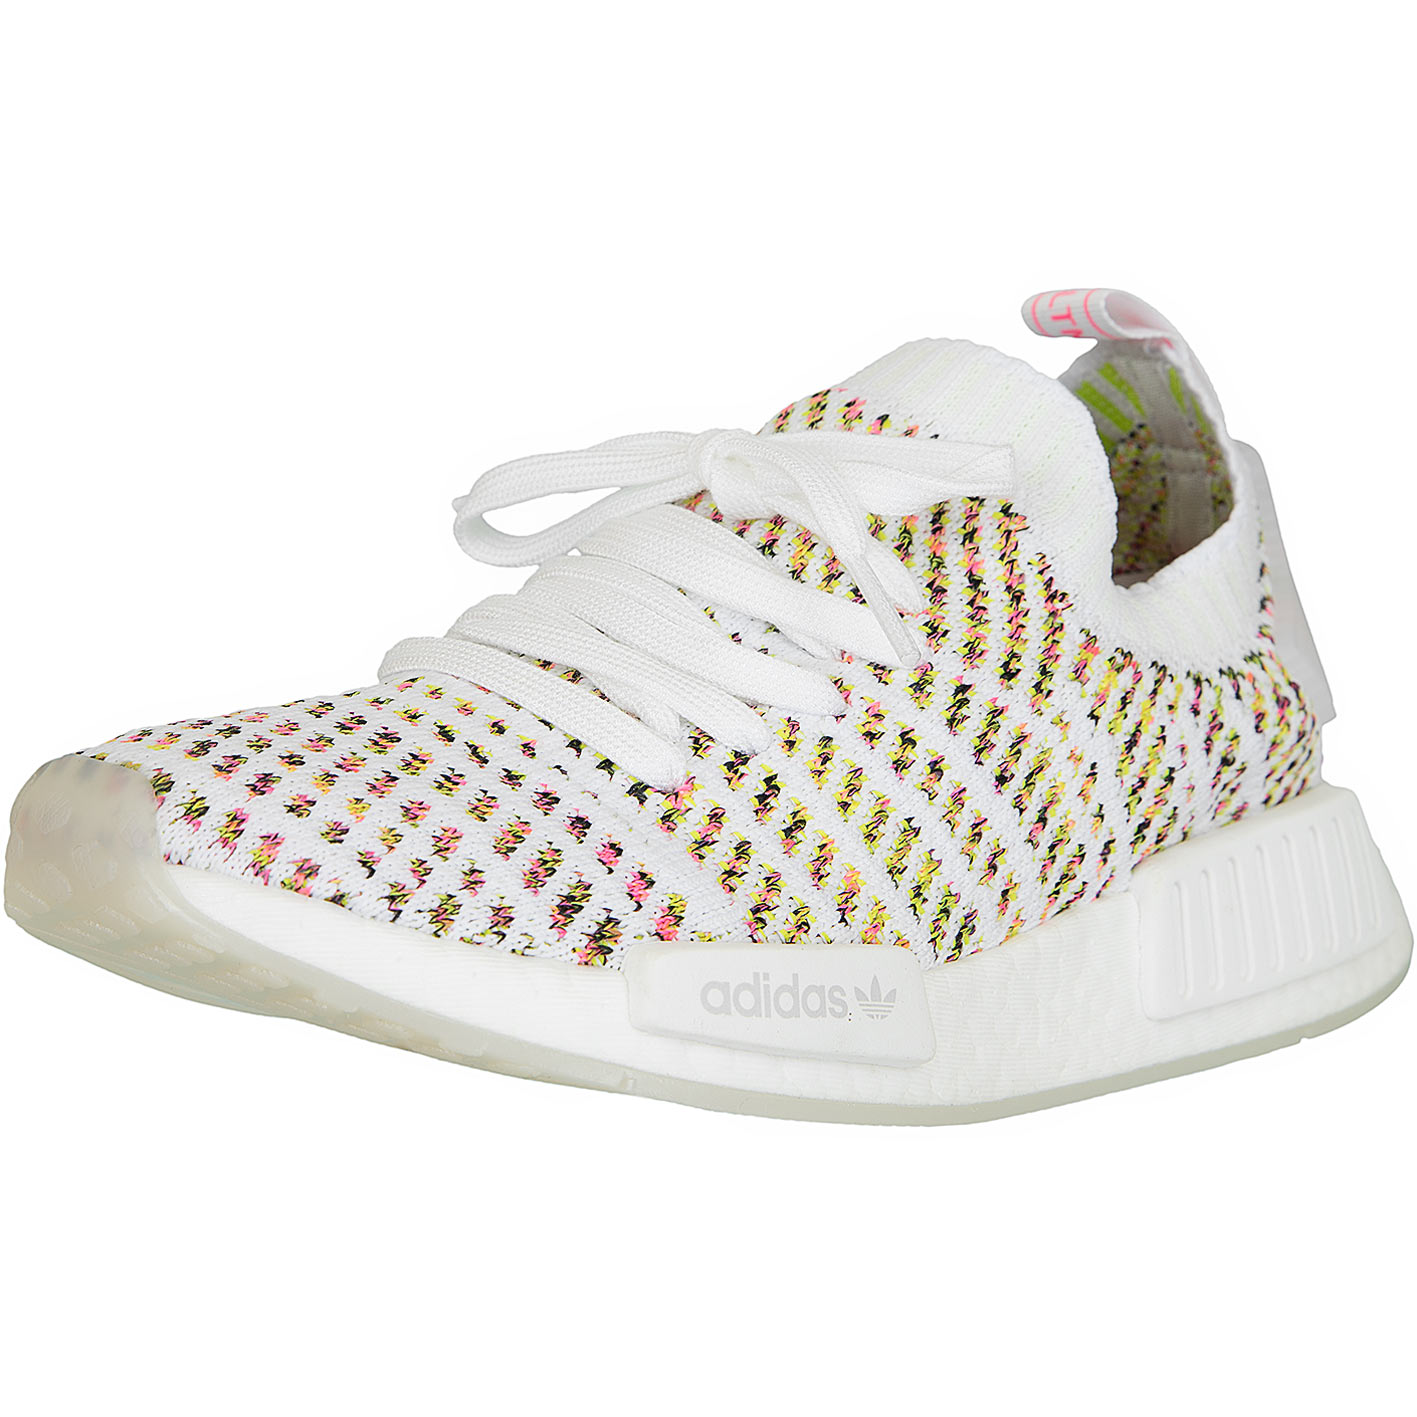 ☆ Adidas Originals Damen Sneaker NMD R1 STLT Primeknit weiß/gelb/pink -  hier bestellen!